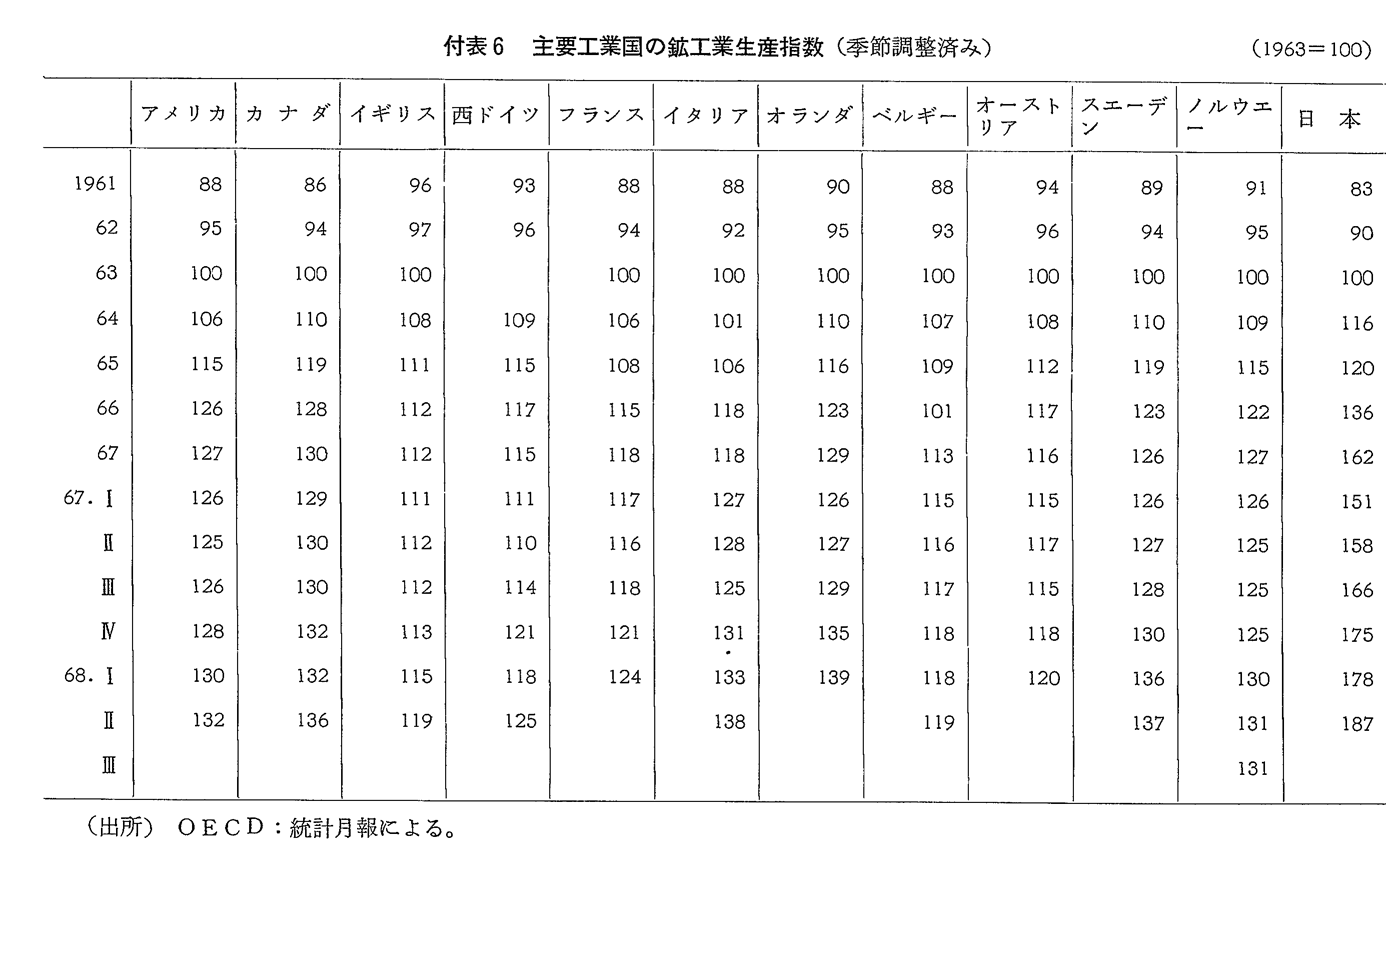 付表6　主要工業国の鉱工業生産指数